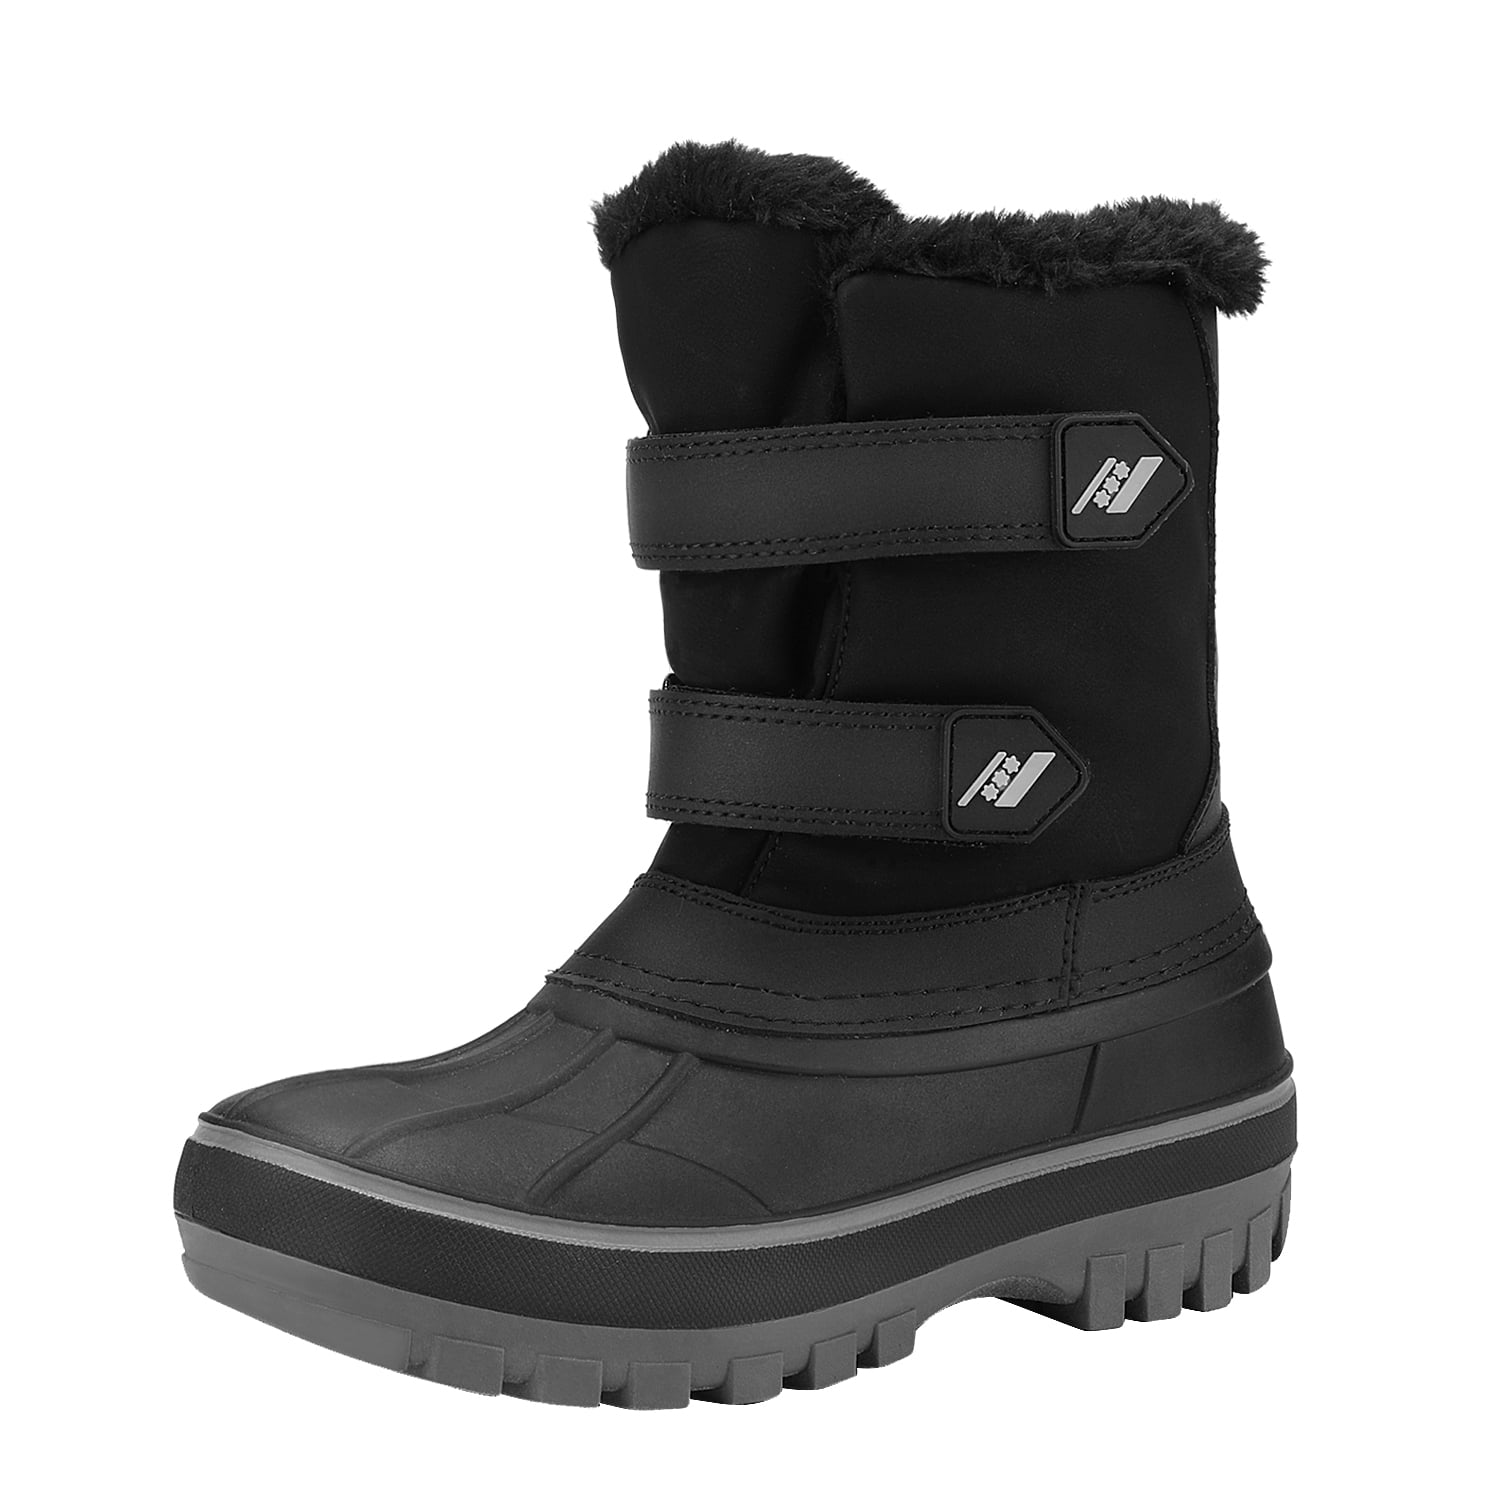 Dream Pairs Boys & Girls Winter Zip Snow Boots Outdoor Warm Waterproof ...